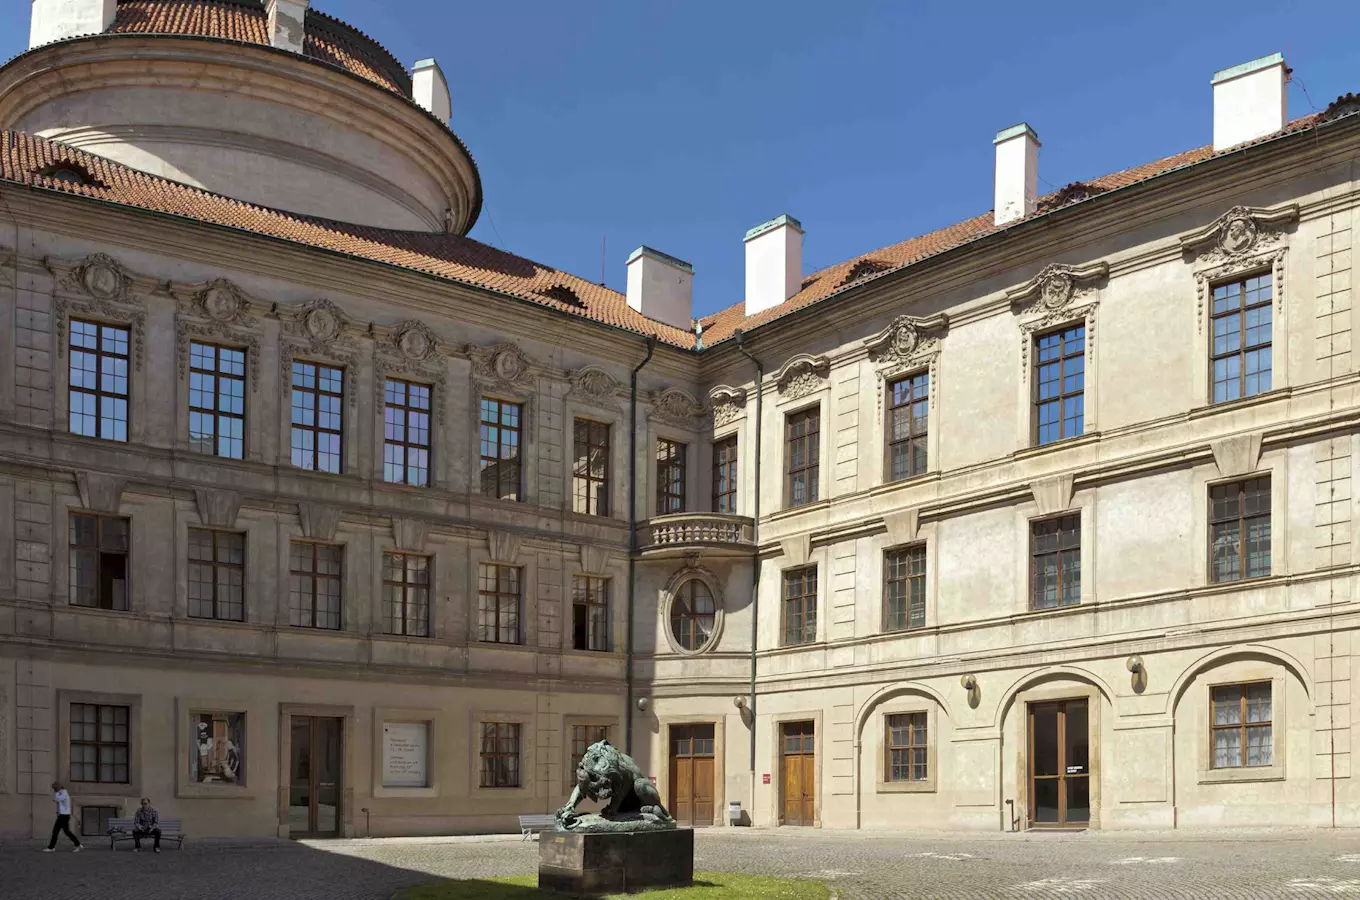 Mezinárodní den muzeí a galerií 2018 - Šternberský palác